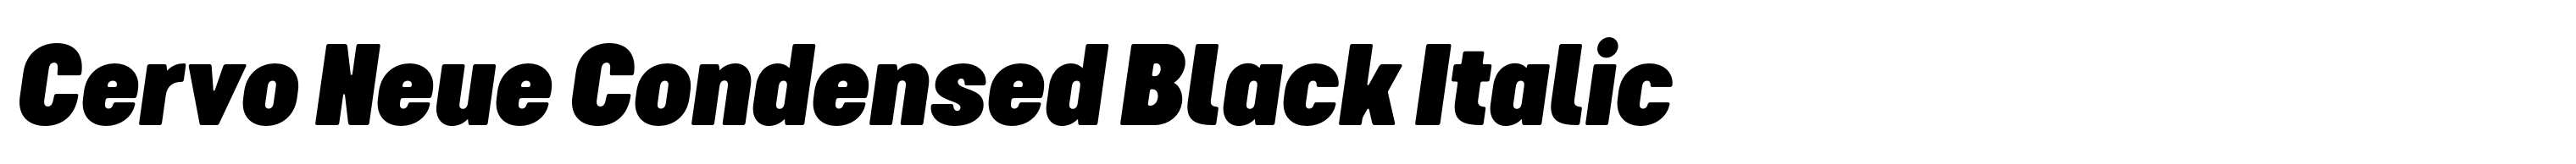 Cervo Neue Condensed Black Italic